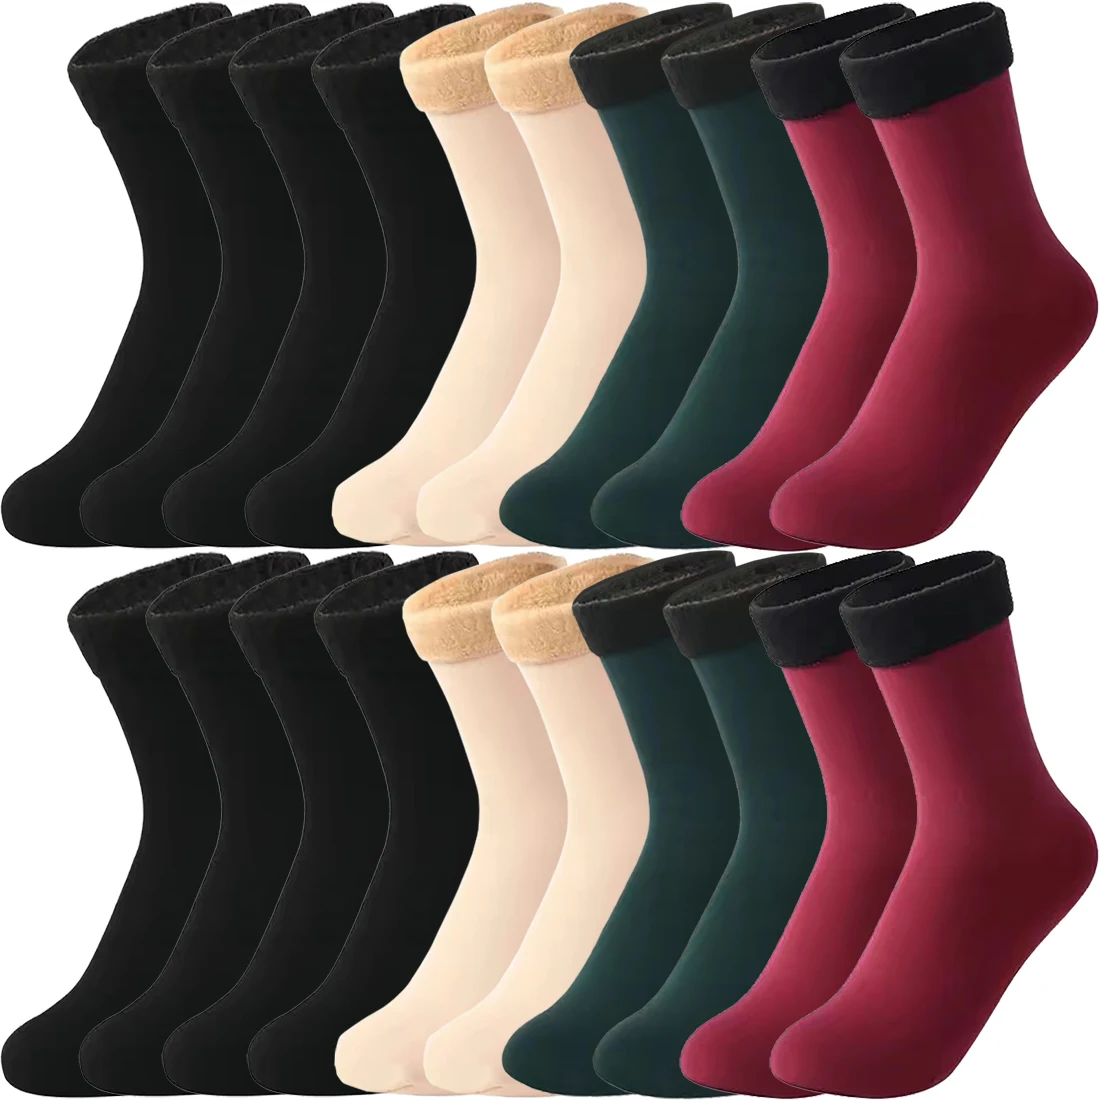 Winter Thermal Socks Black Khaki Velvet Boots Floor Socks La